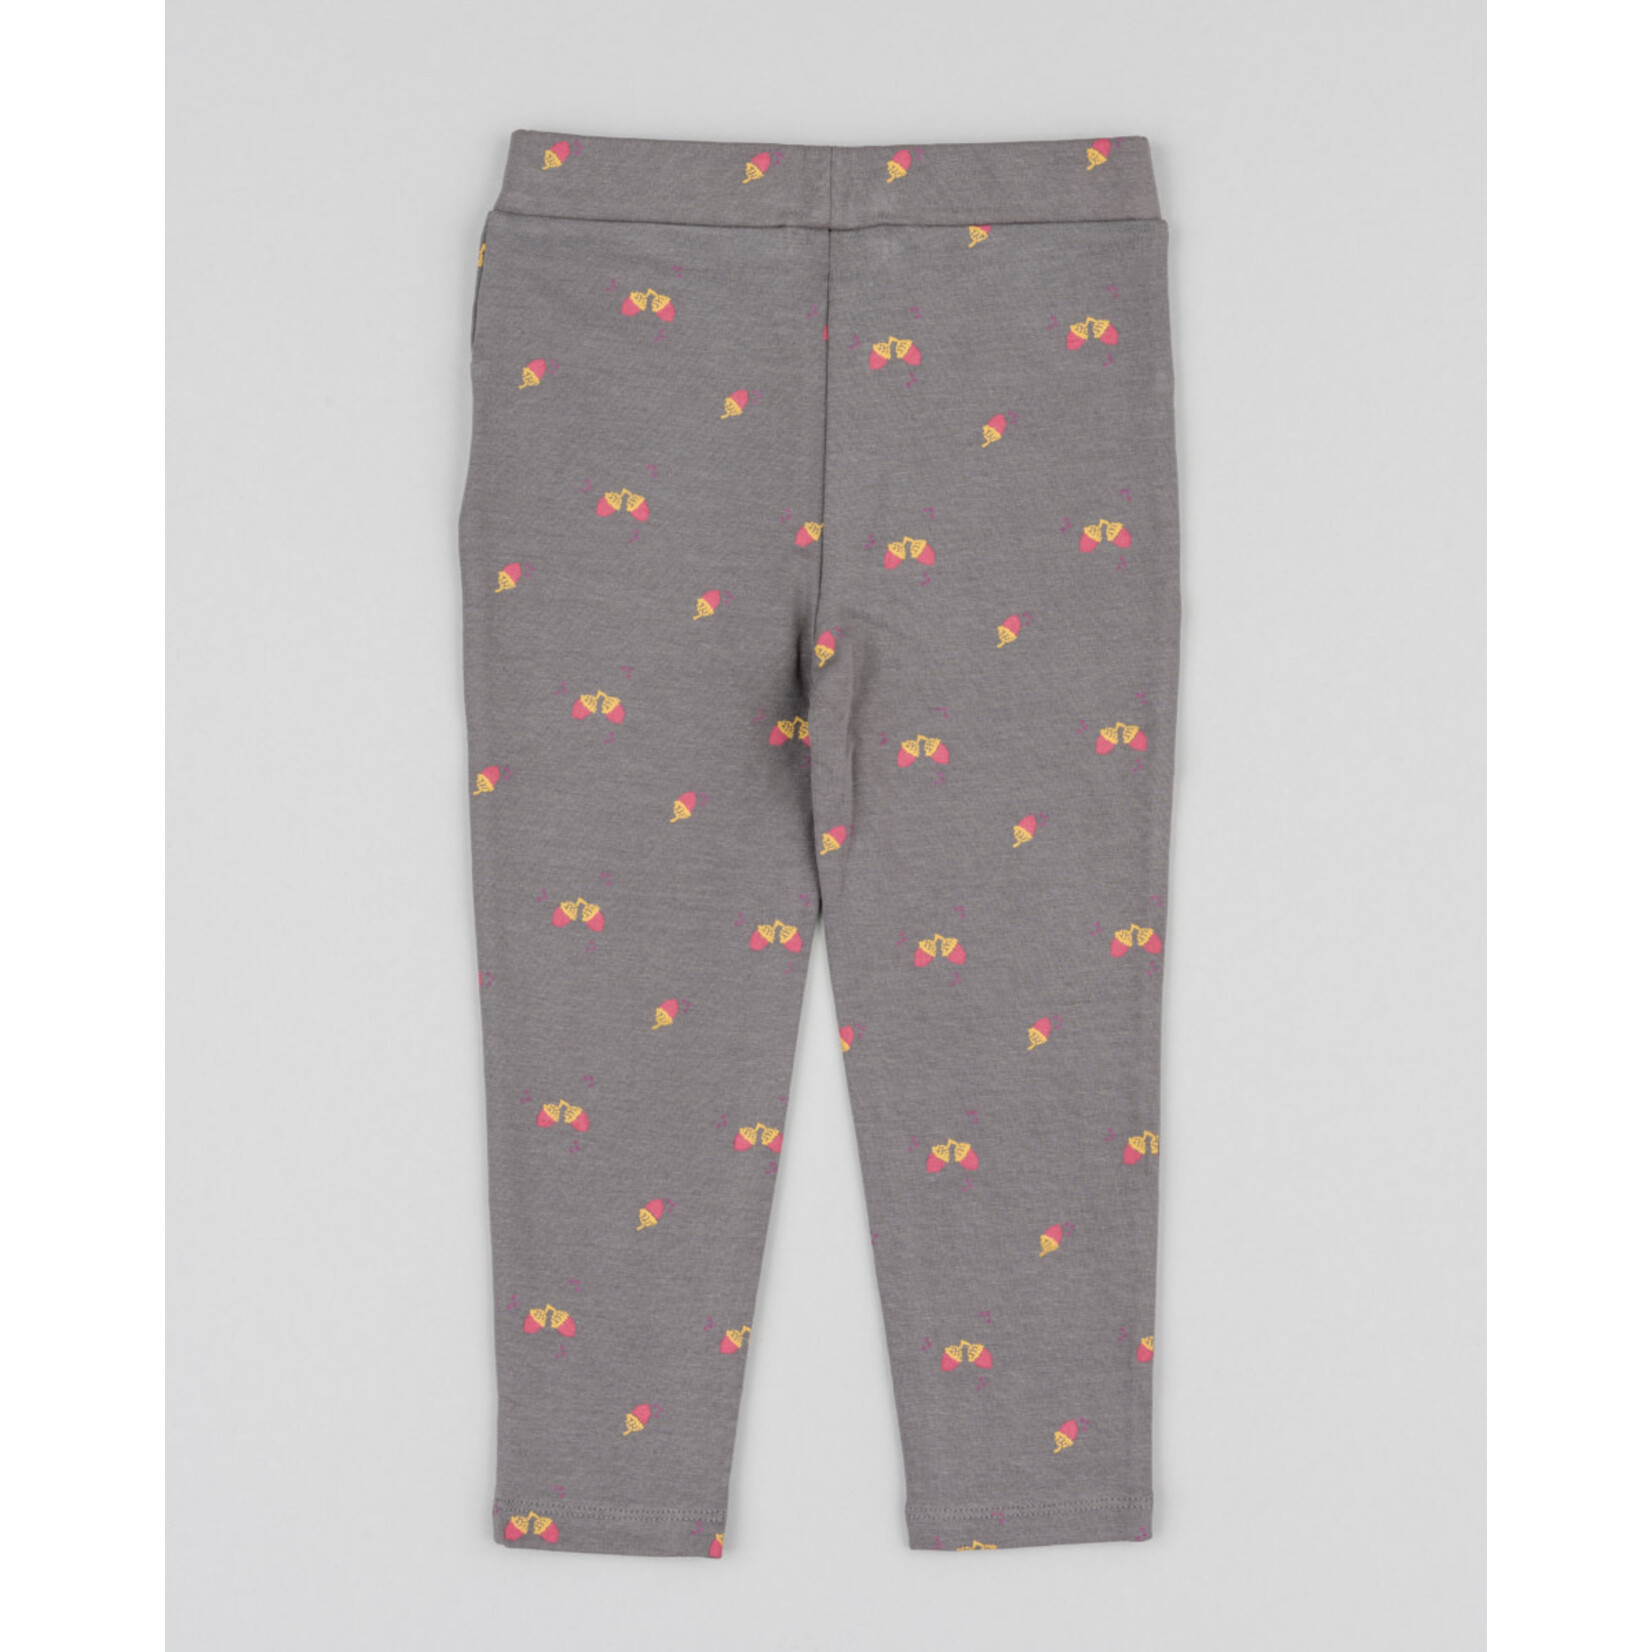 Losan LOSAN - Taupe Grey Soft Pants / Leggings with Orange and Pink Acorn Print